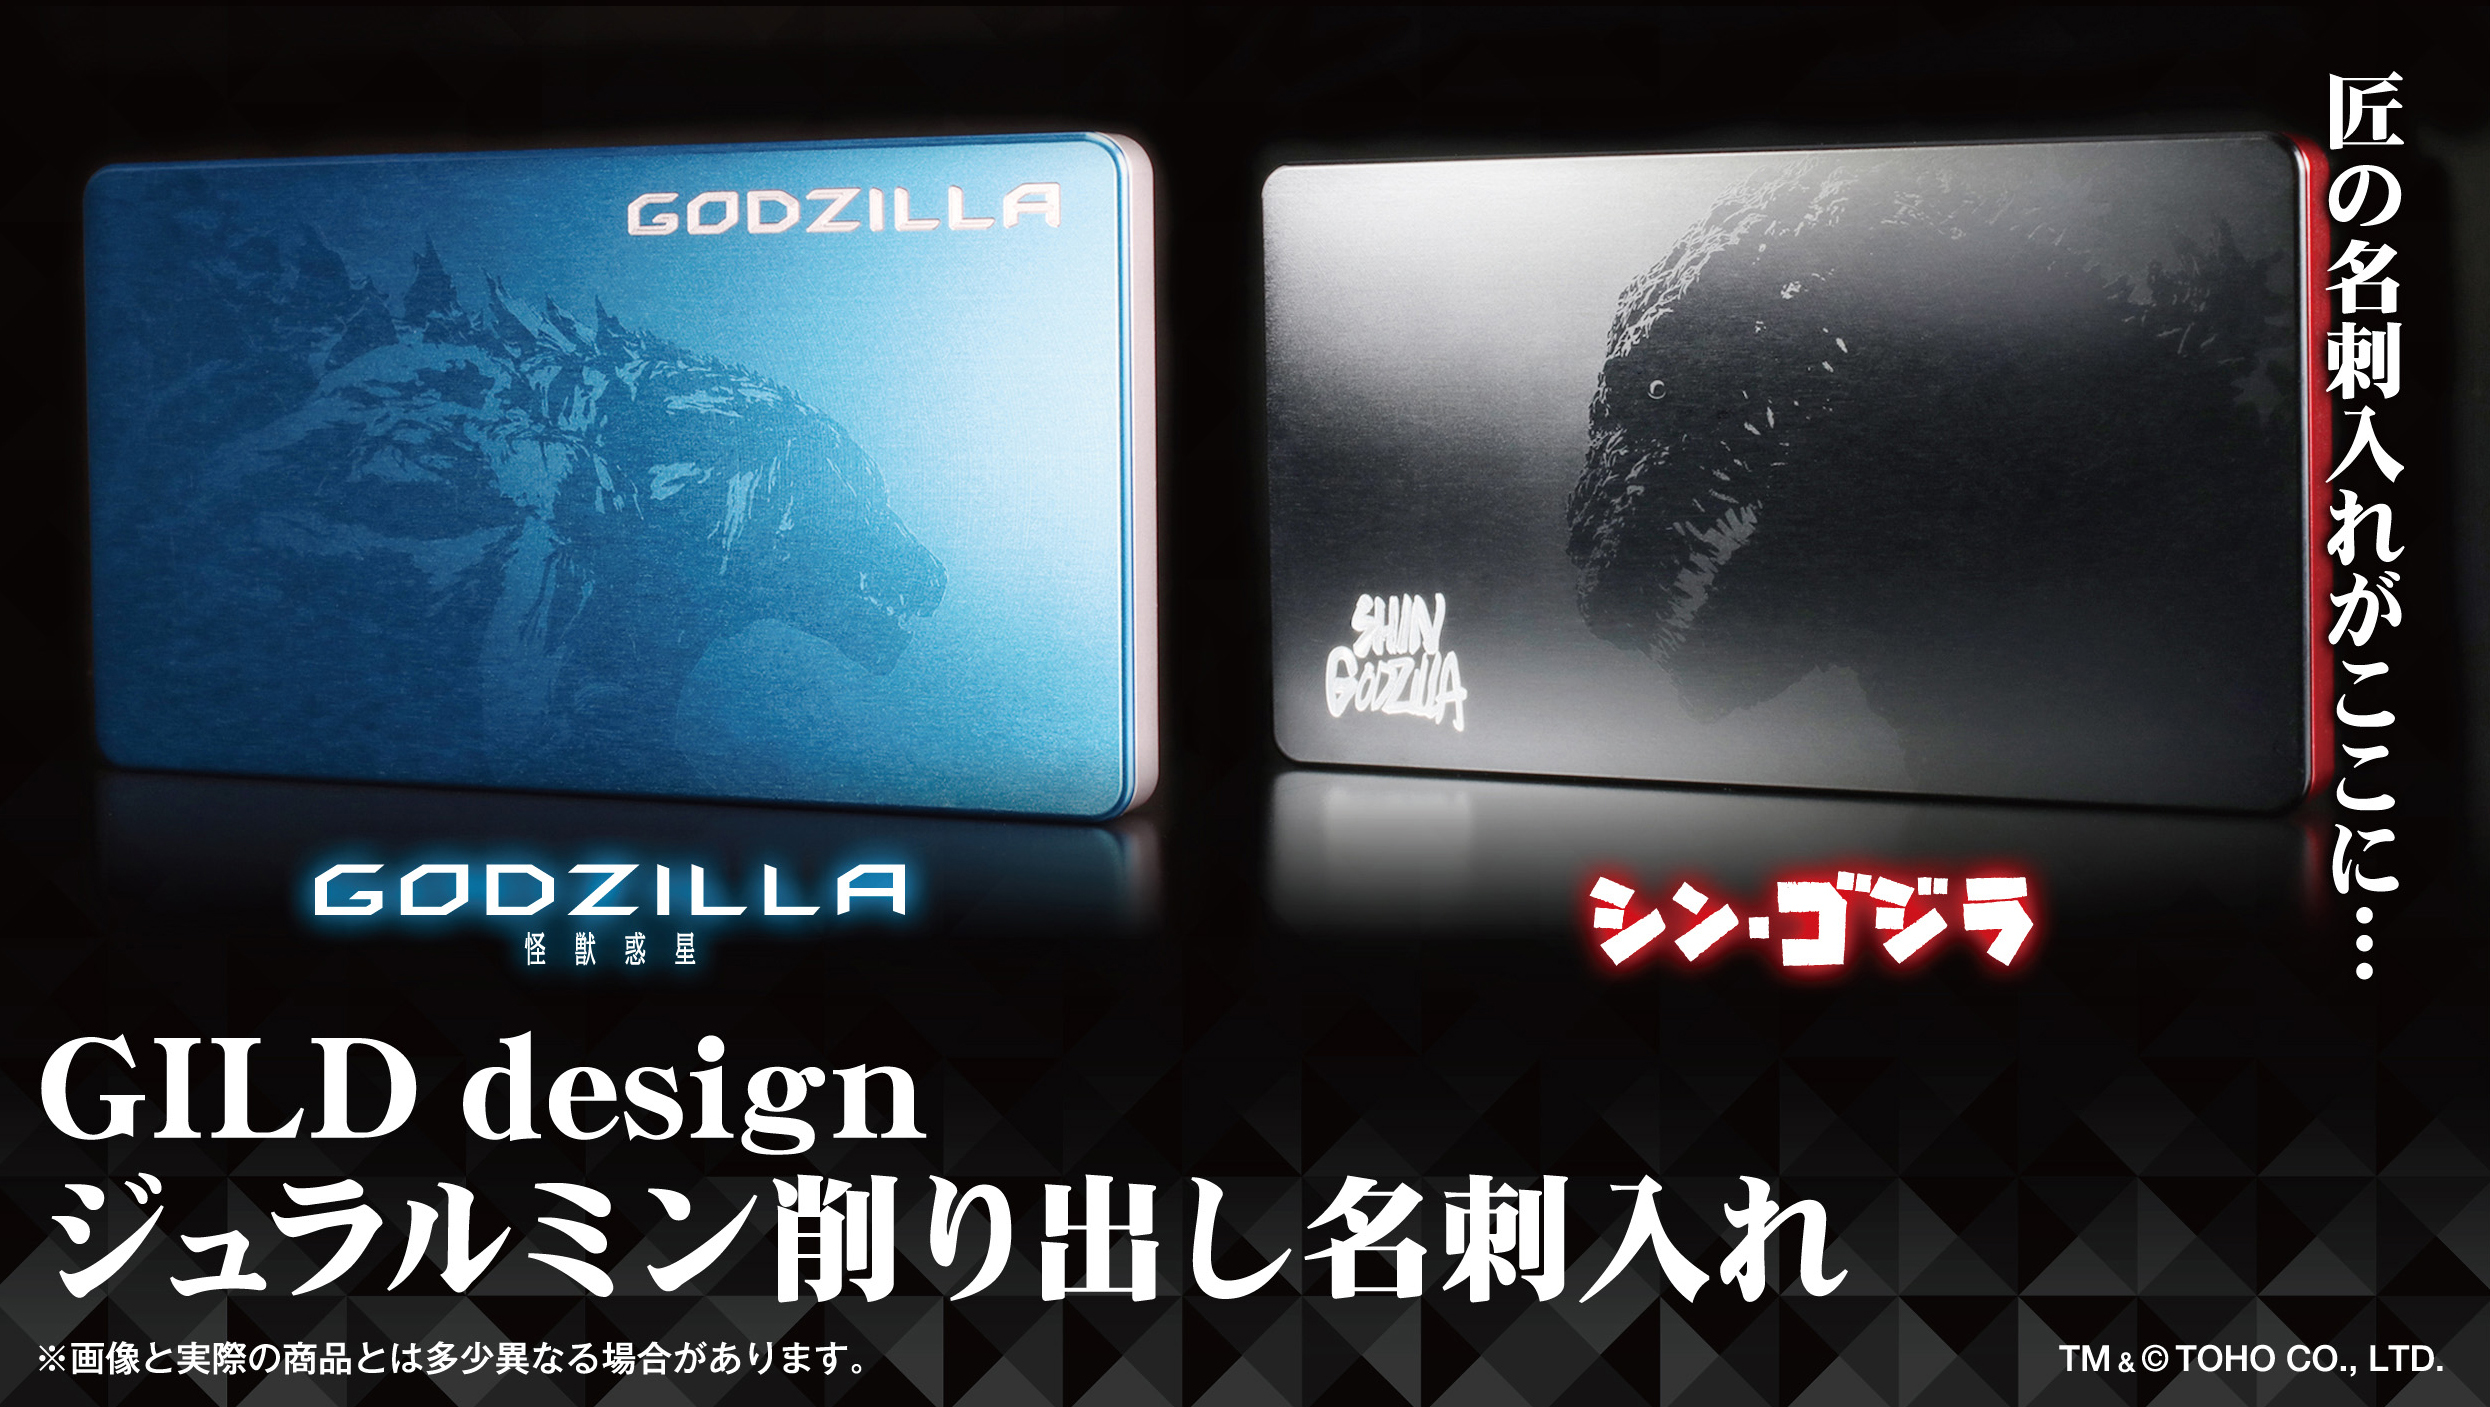 プレスリリース Godzilla 怪獣惑星 シン ゴジラ のジュラルミン素材を加工した大人の名刺入れ登場 Press 毎日新聞